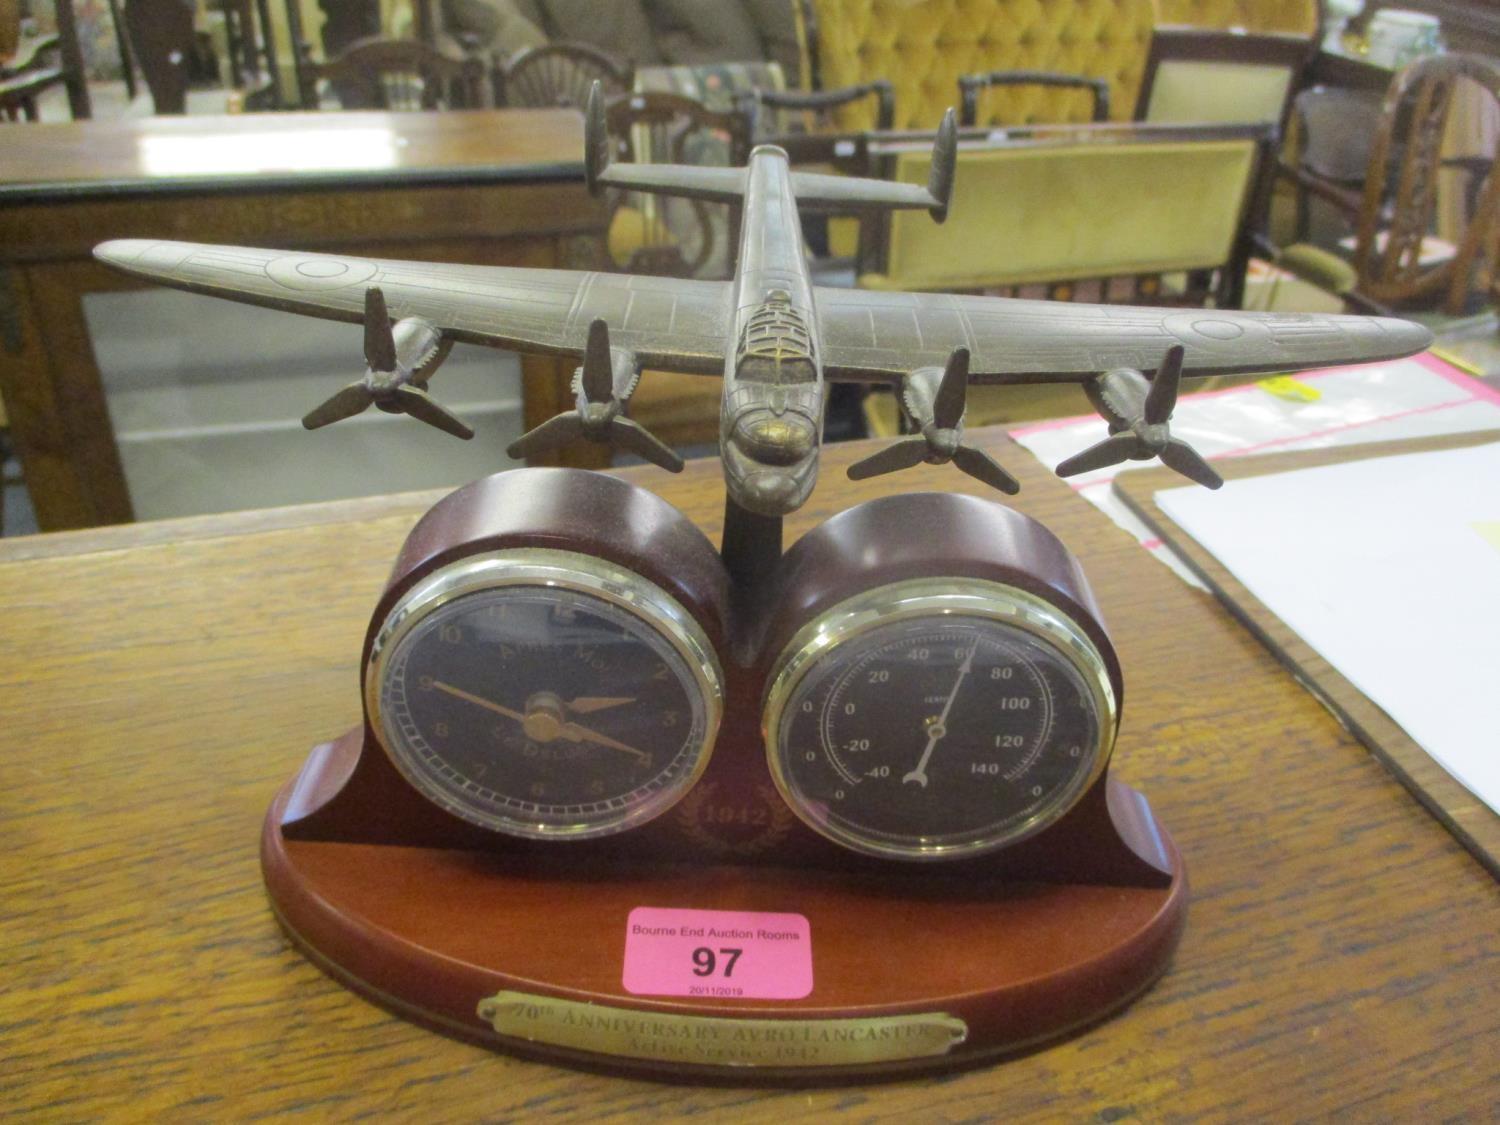 A 70th Anniversary Avro Lancaster plane desk clock and barometer, 6"h x 9"w